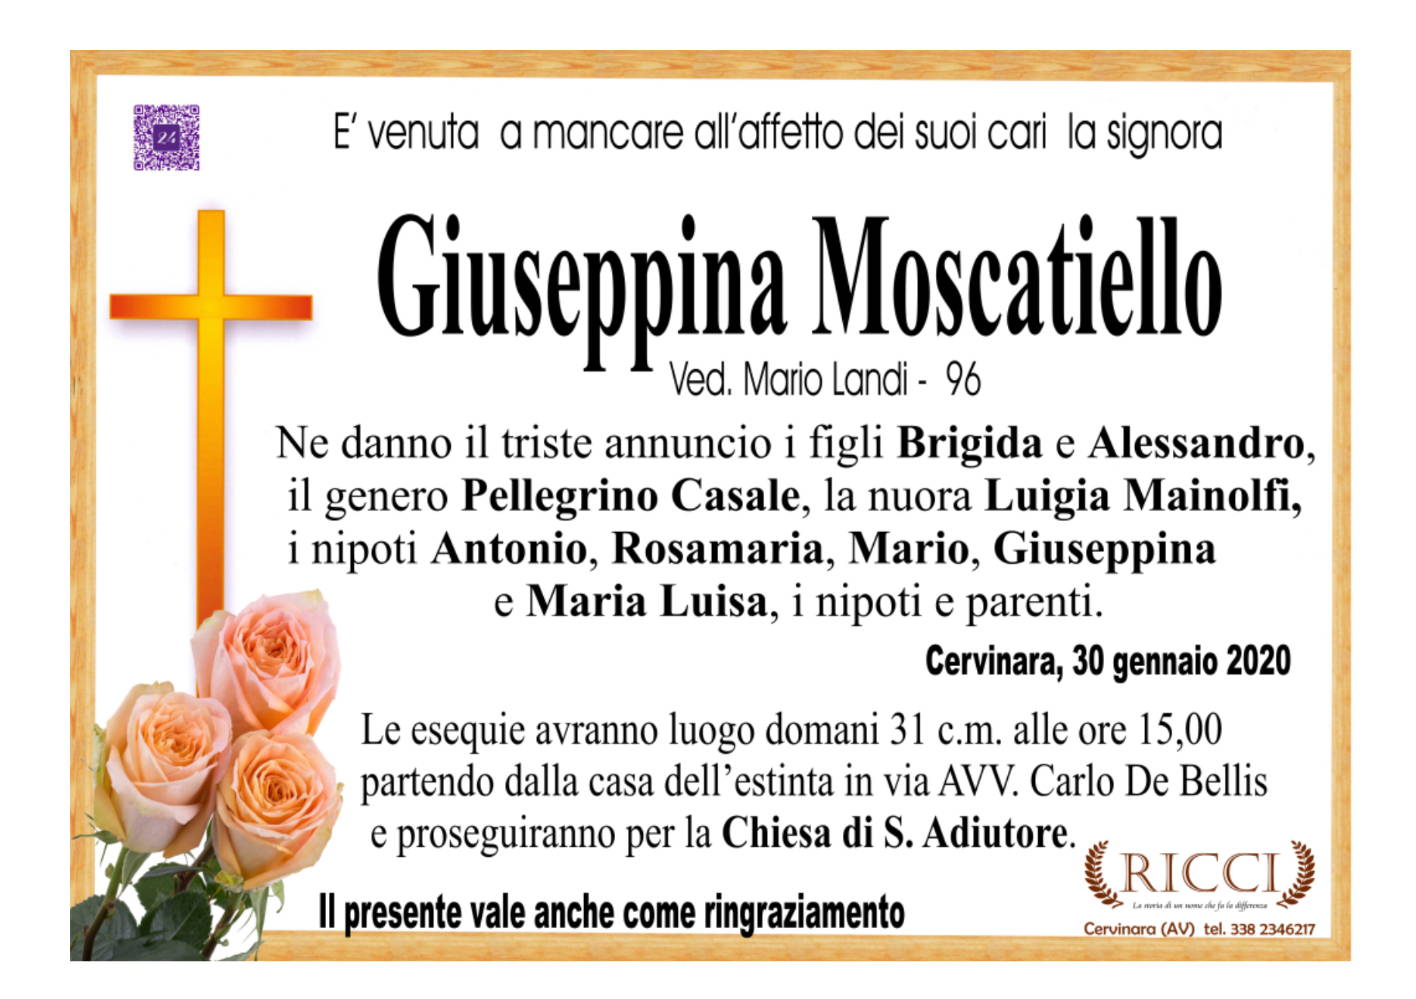 Giuseppina Moscatiello